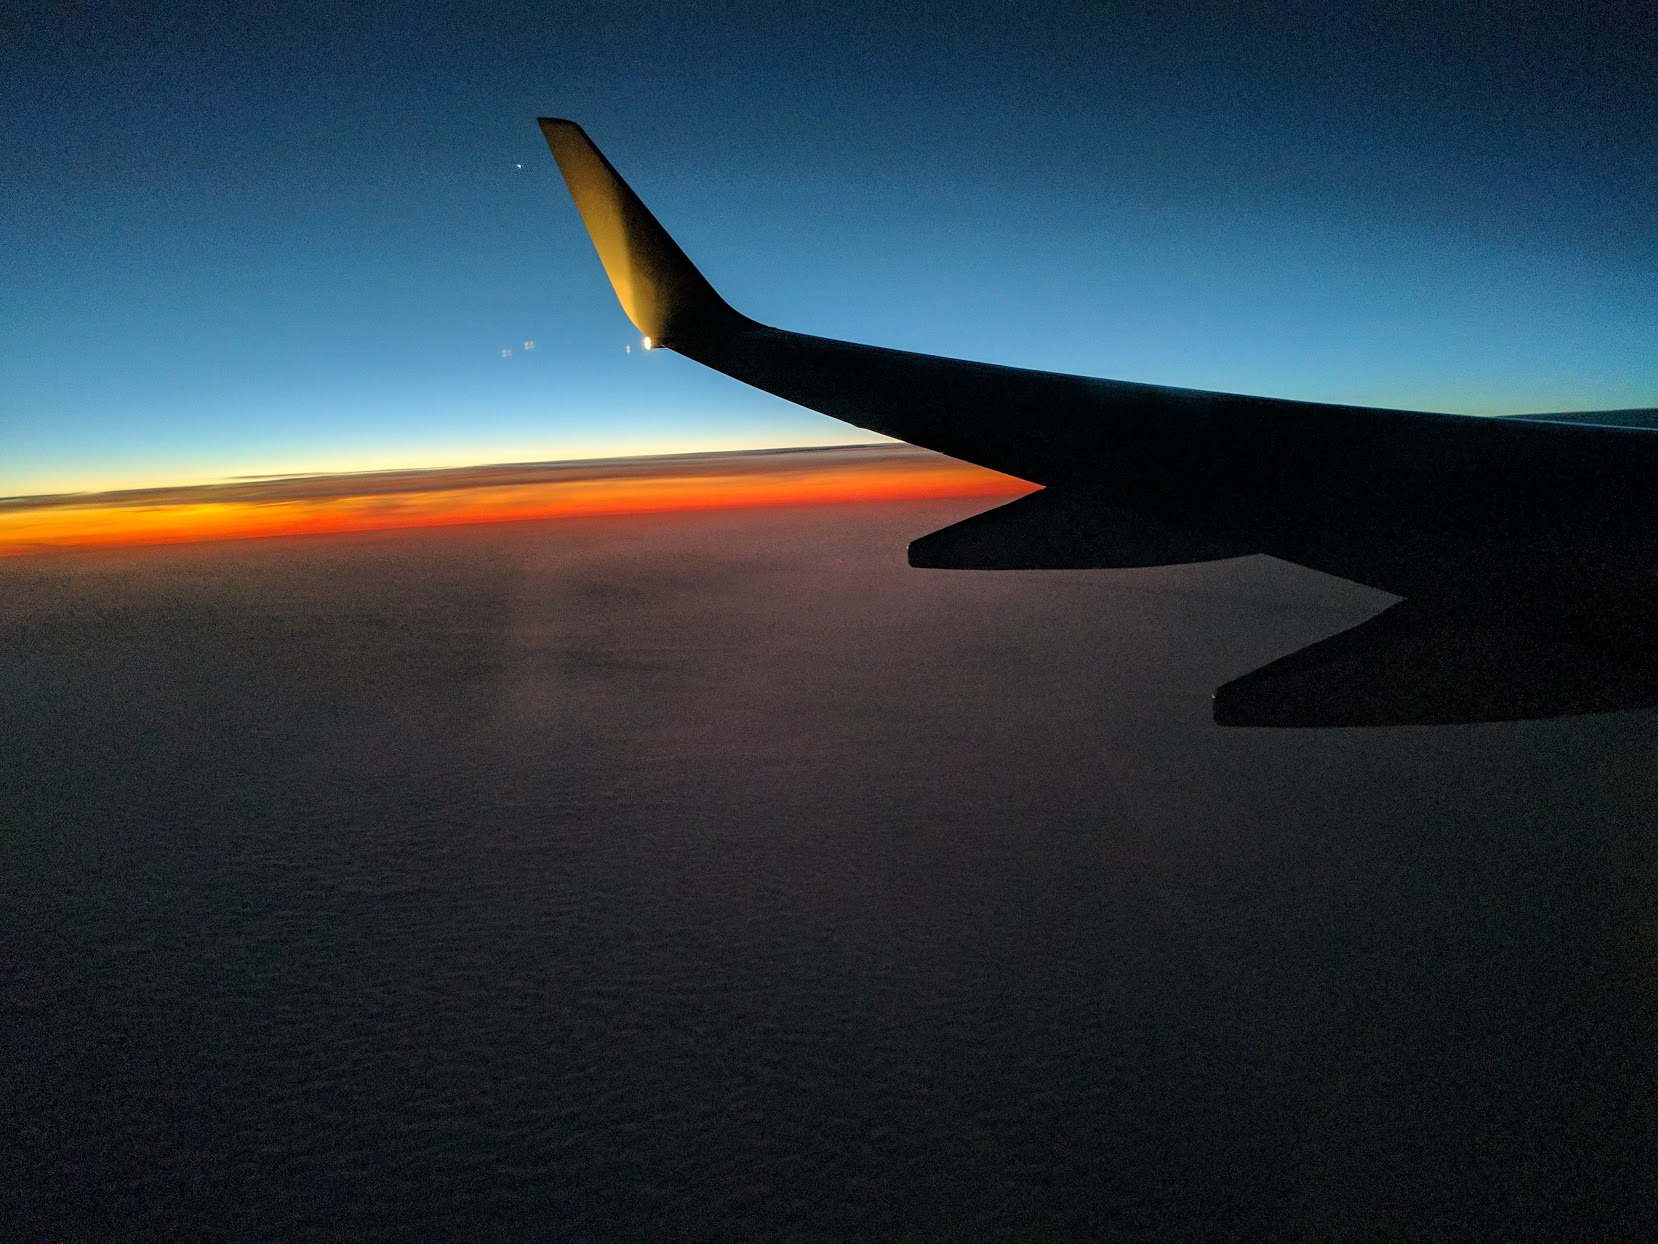 Sunset flightview